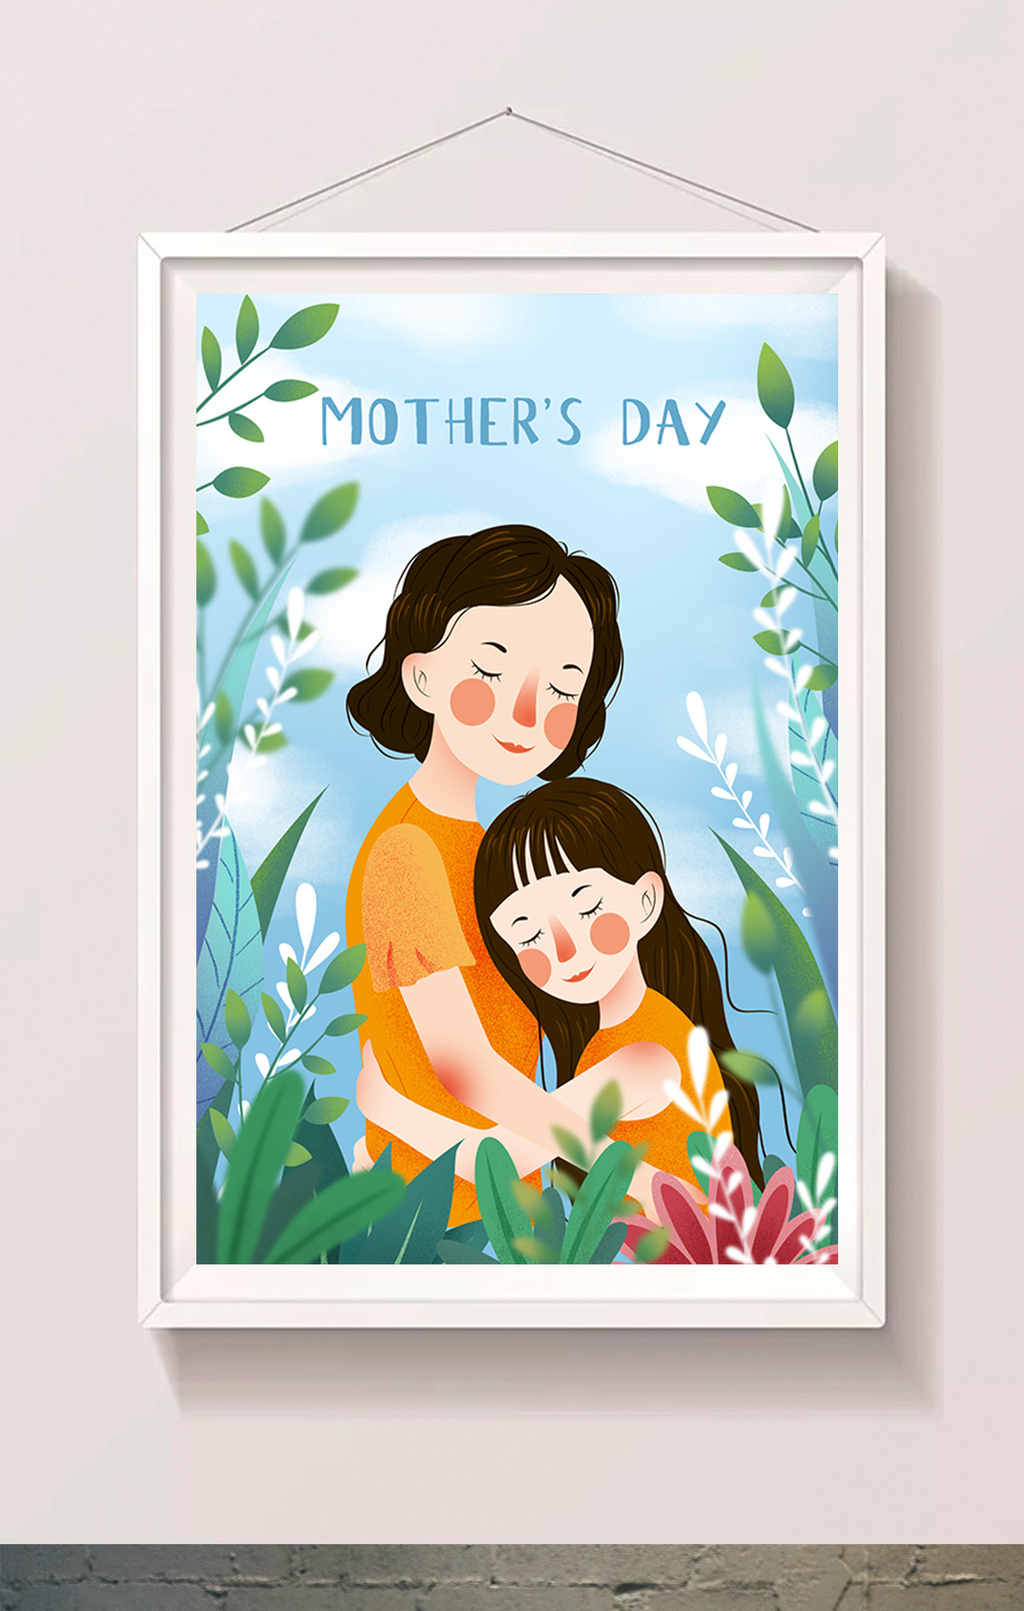 包图 插画 情感表达 > 唯美清新母亲节拥抱母亲卡通插画  上传时间